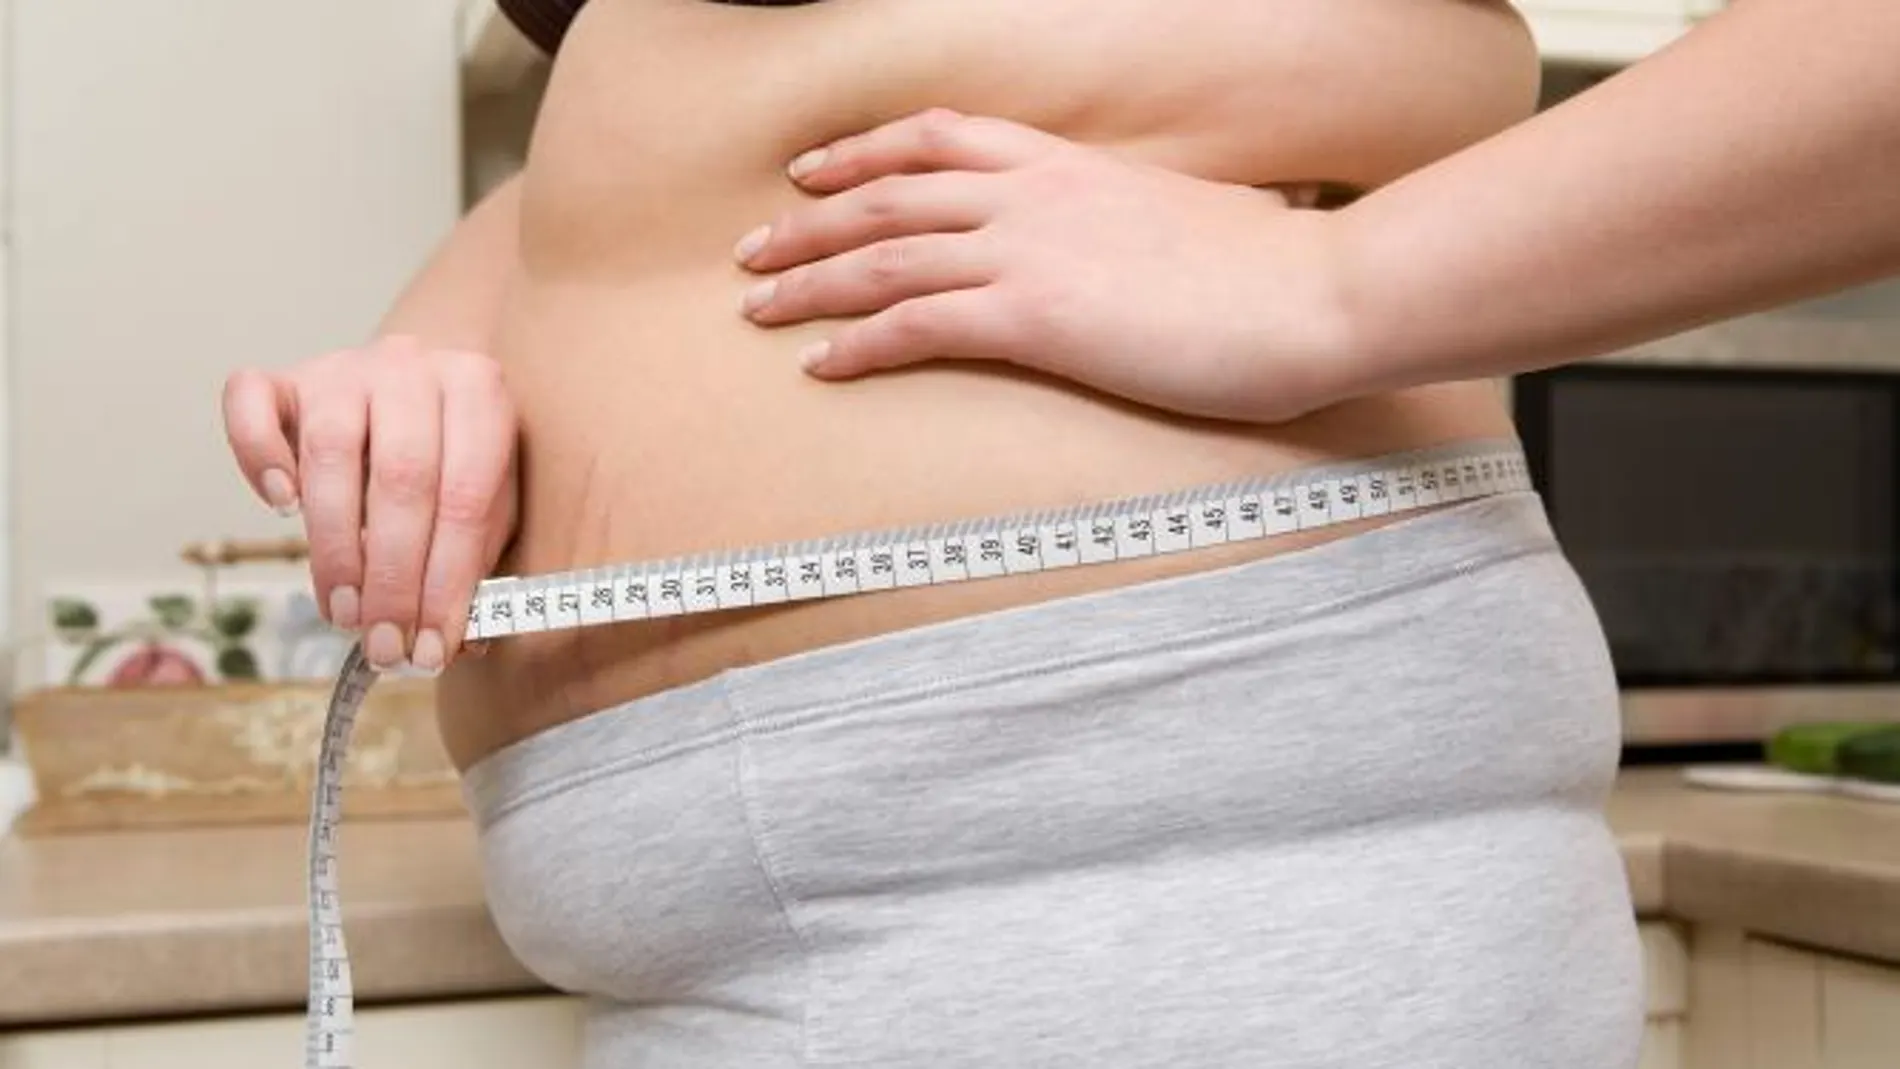 Los médicos alertan de riesgo de obesidad a quienes duermen poco y comen mal